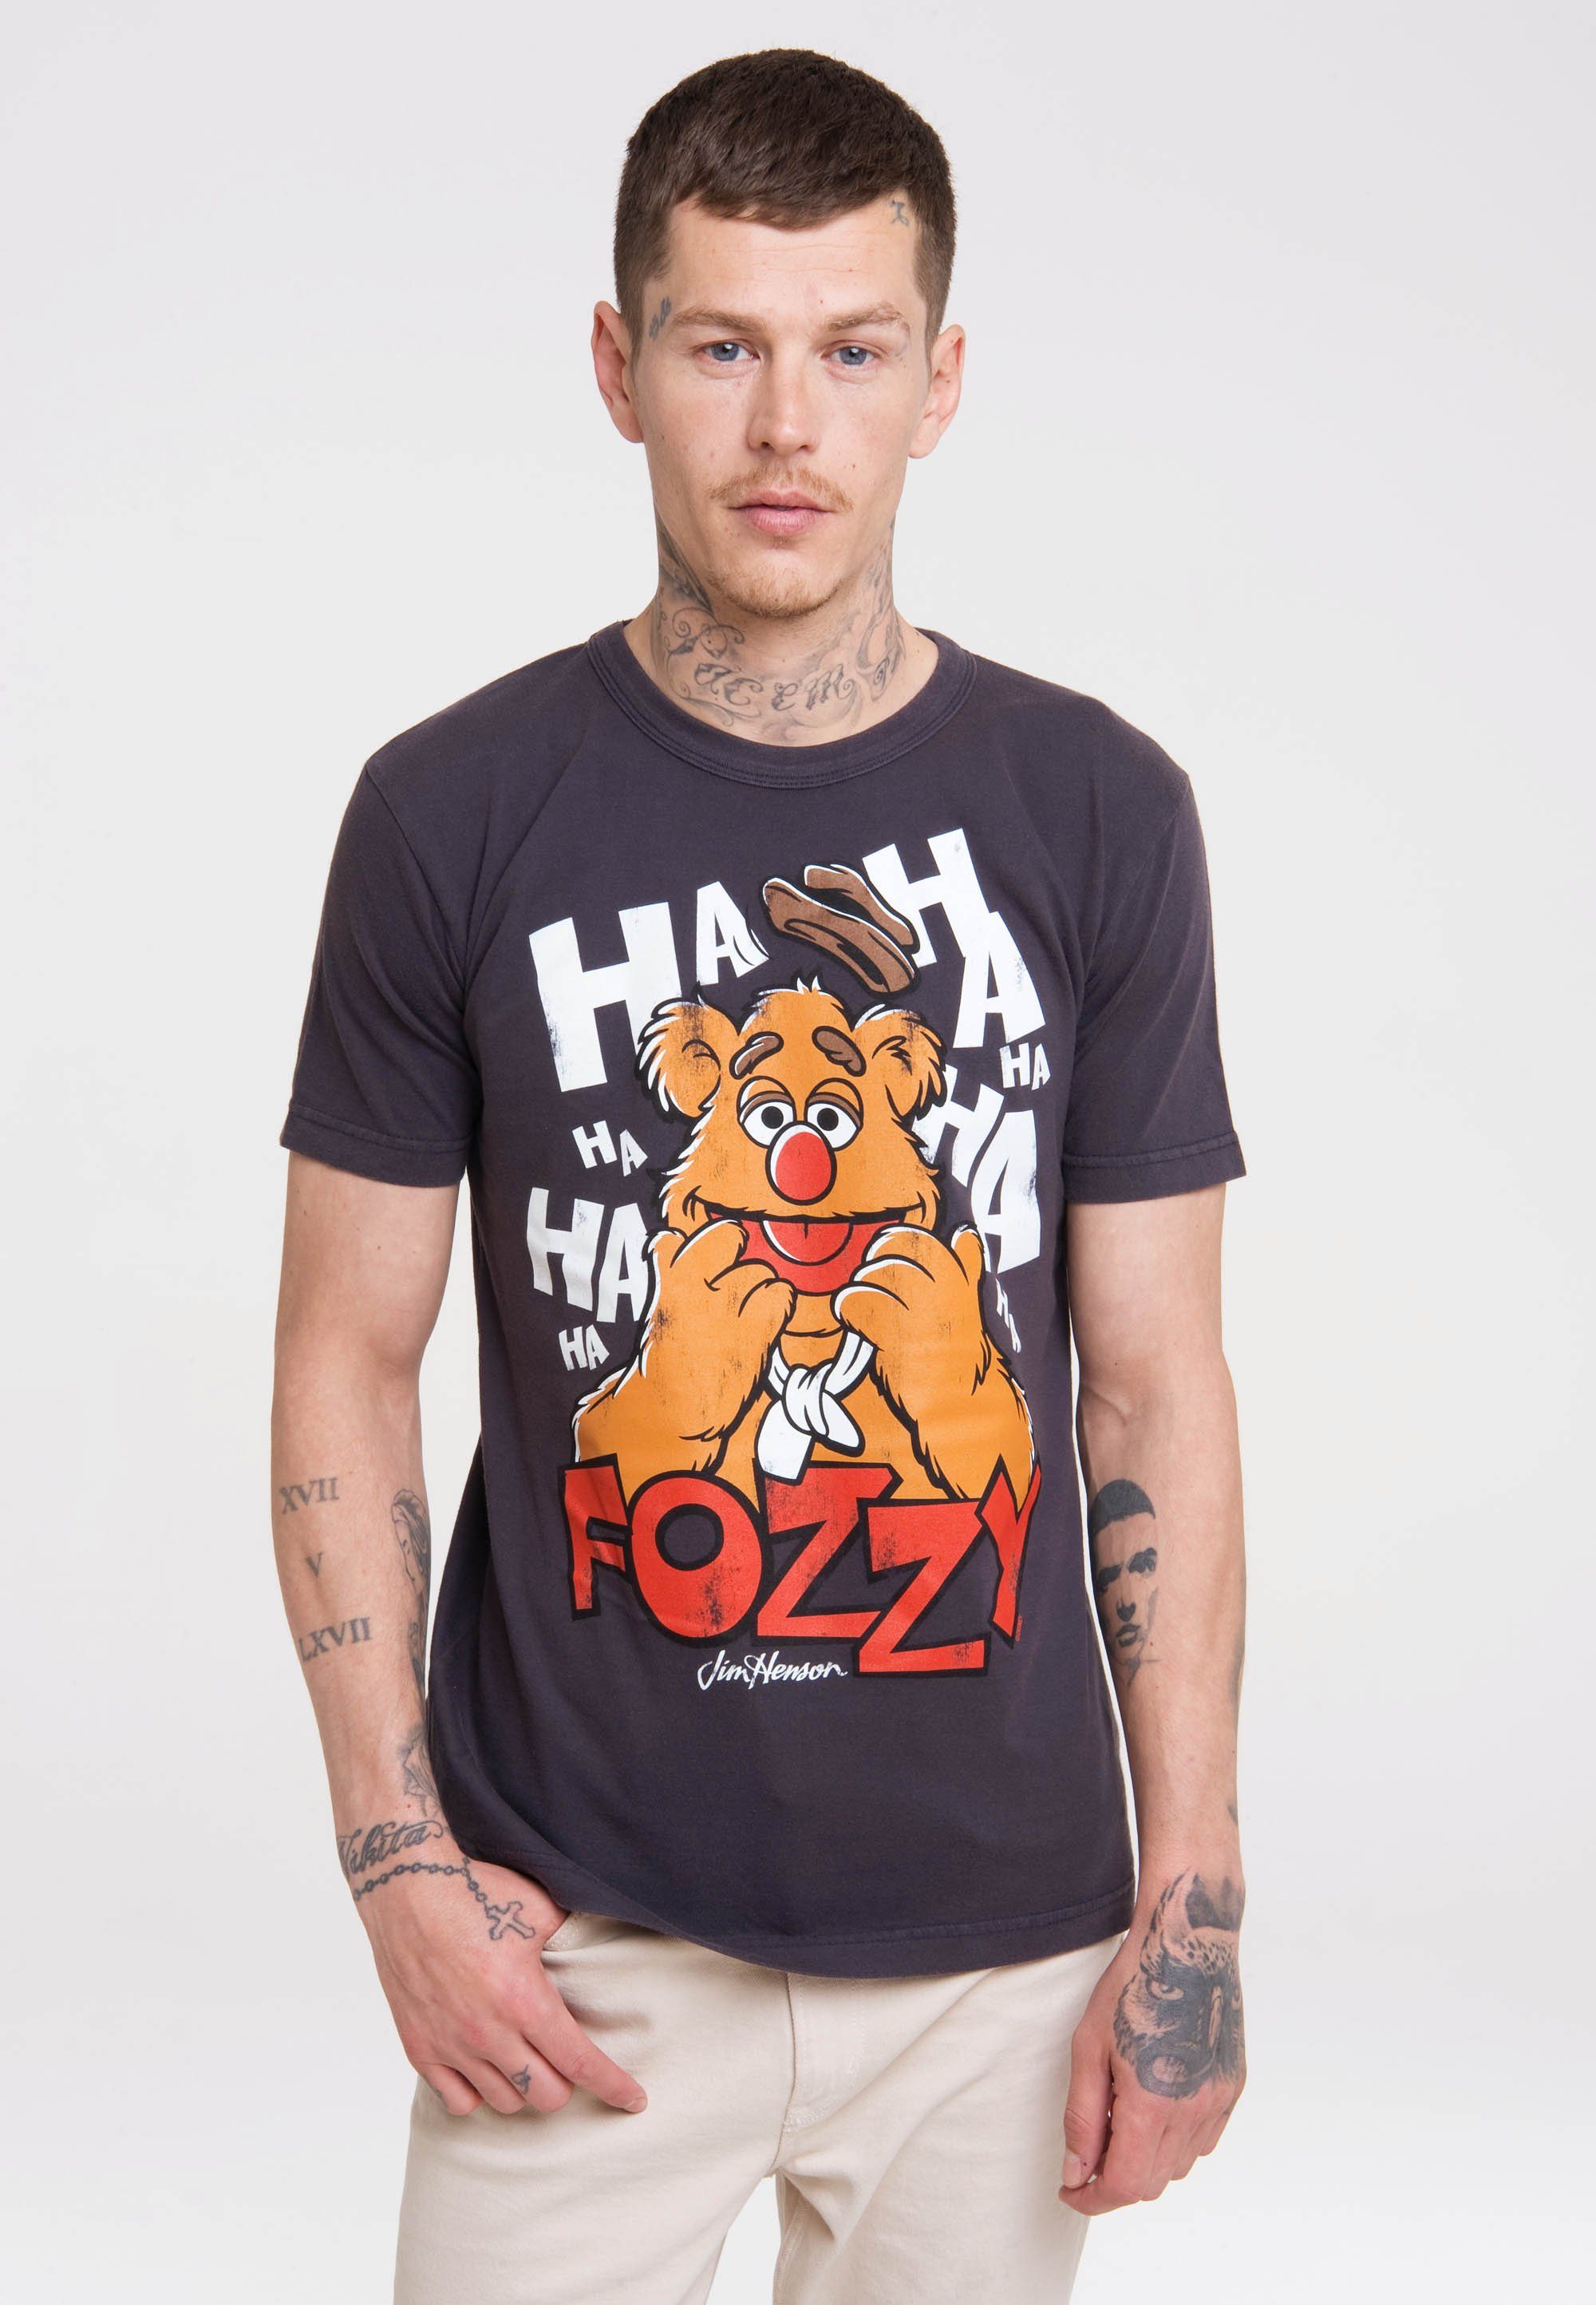 lizenziertem LOGOSHIRT - Print Fozzy T-Shirt Muppet Show mit Bär